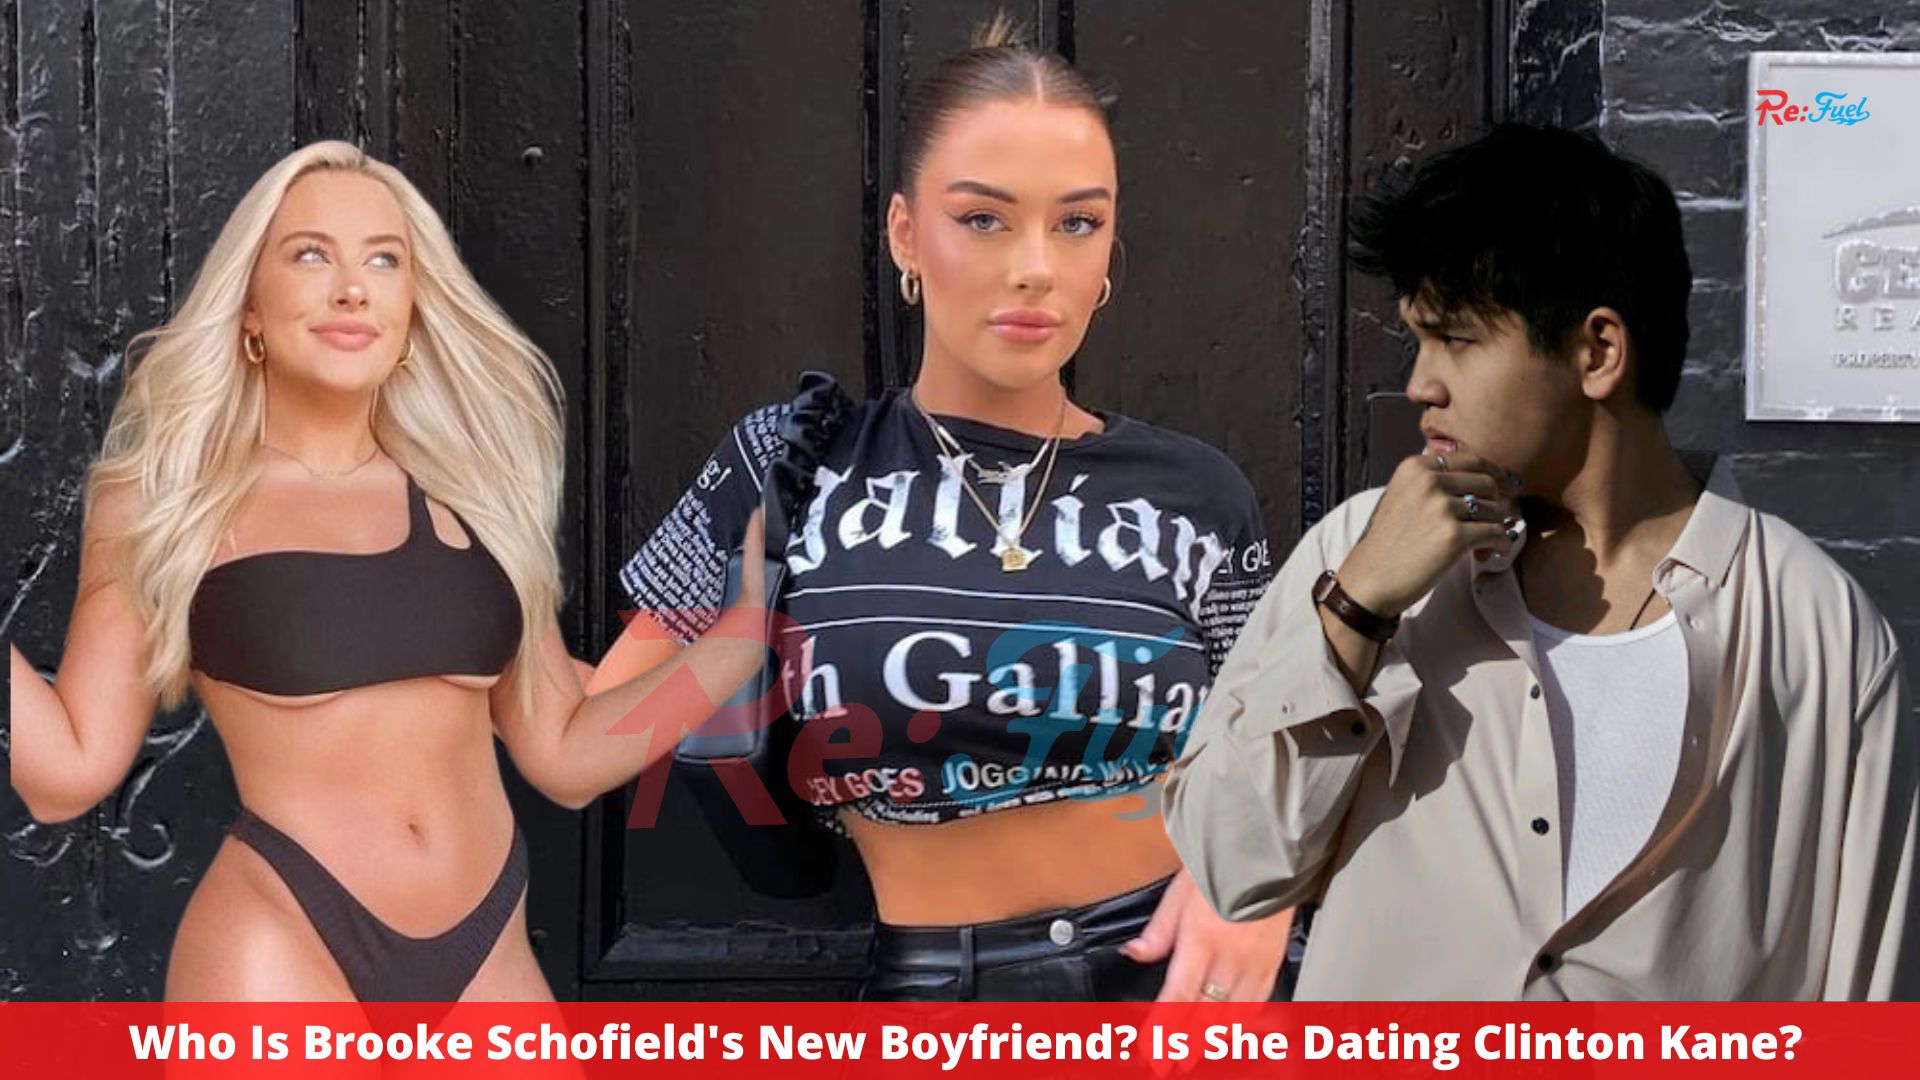 Who Is Brooke Schofield's New Boyfriend? Is She Dating Clinton Kane?